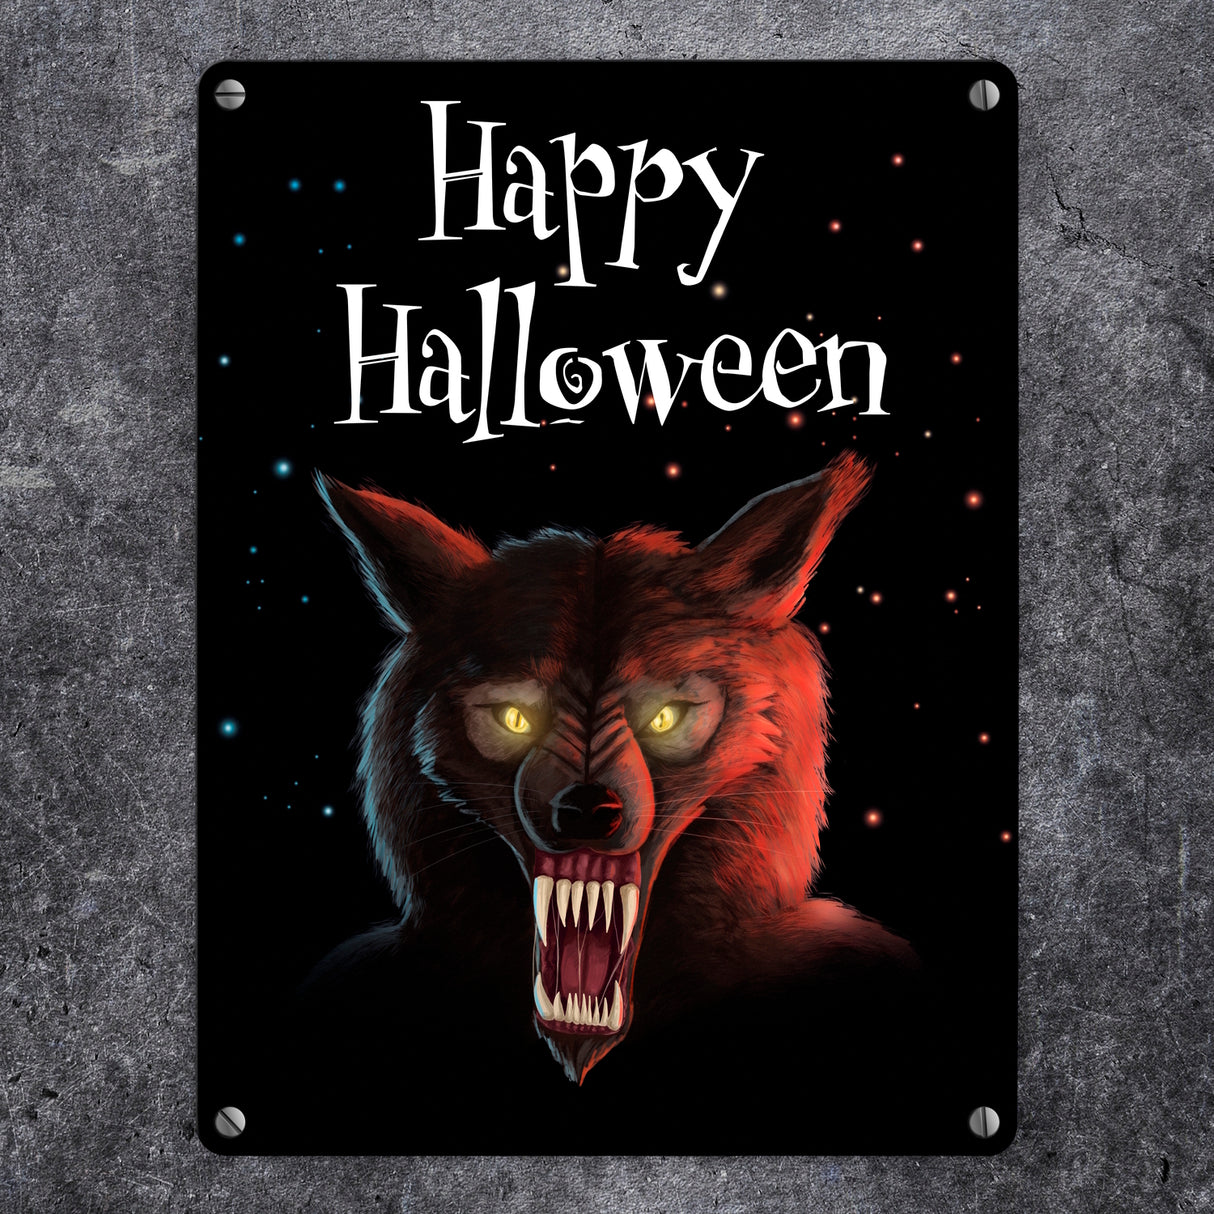 Metallschild mit gruseligem Wolf Motiv und Happy Halloween Schriftzug